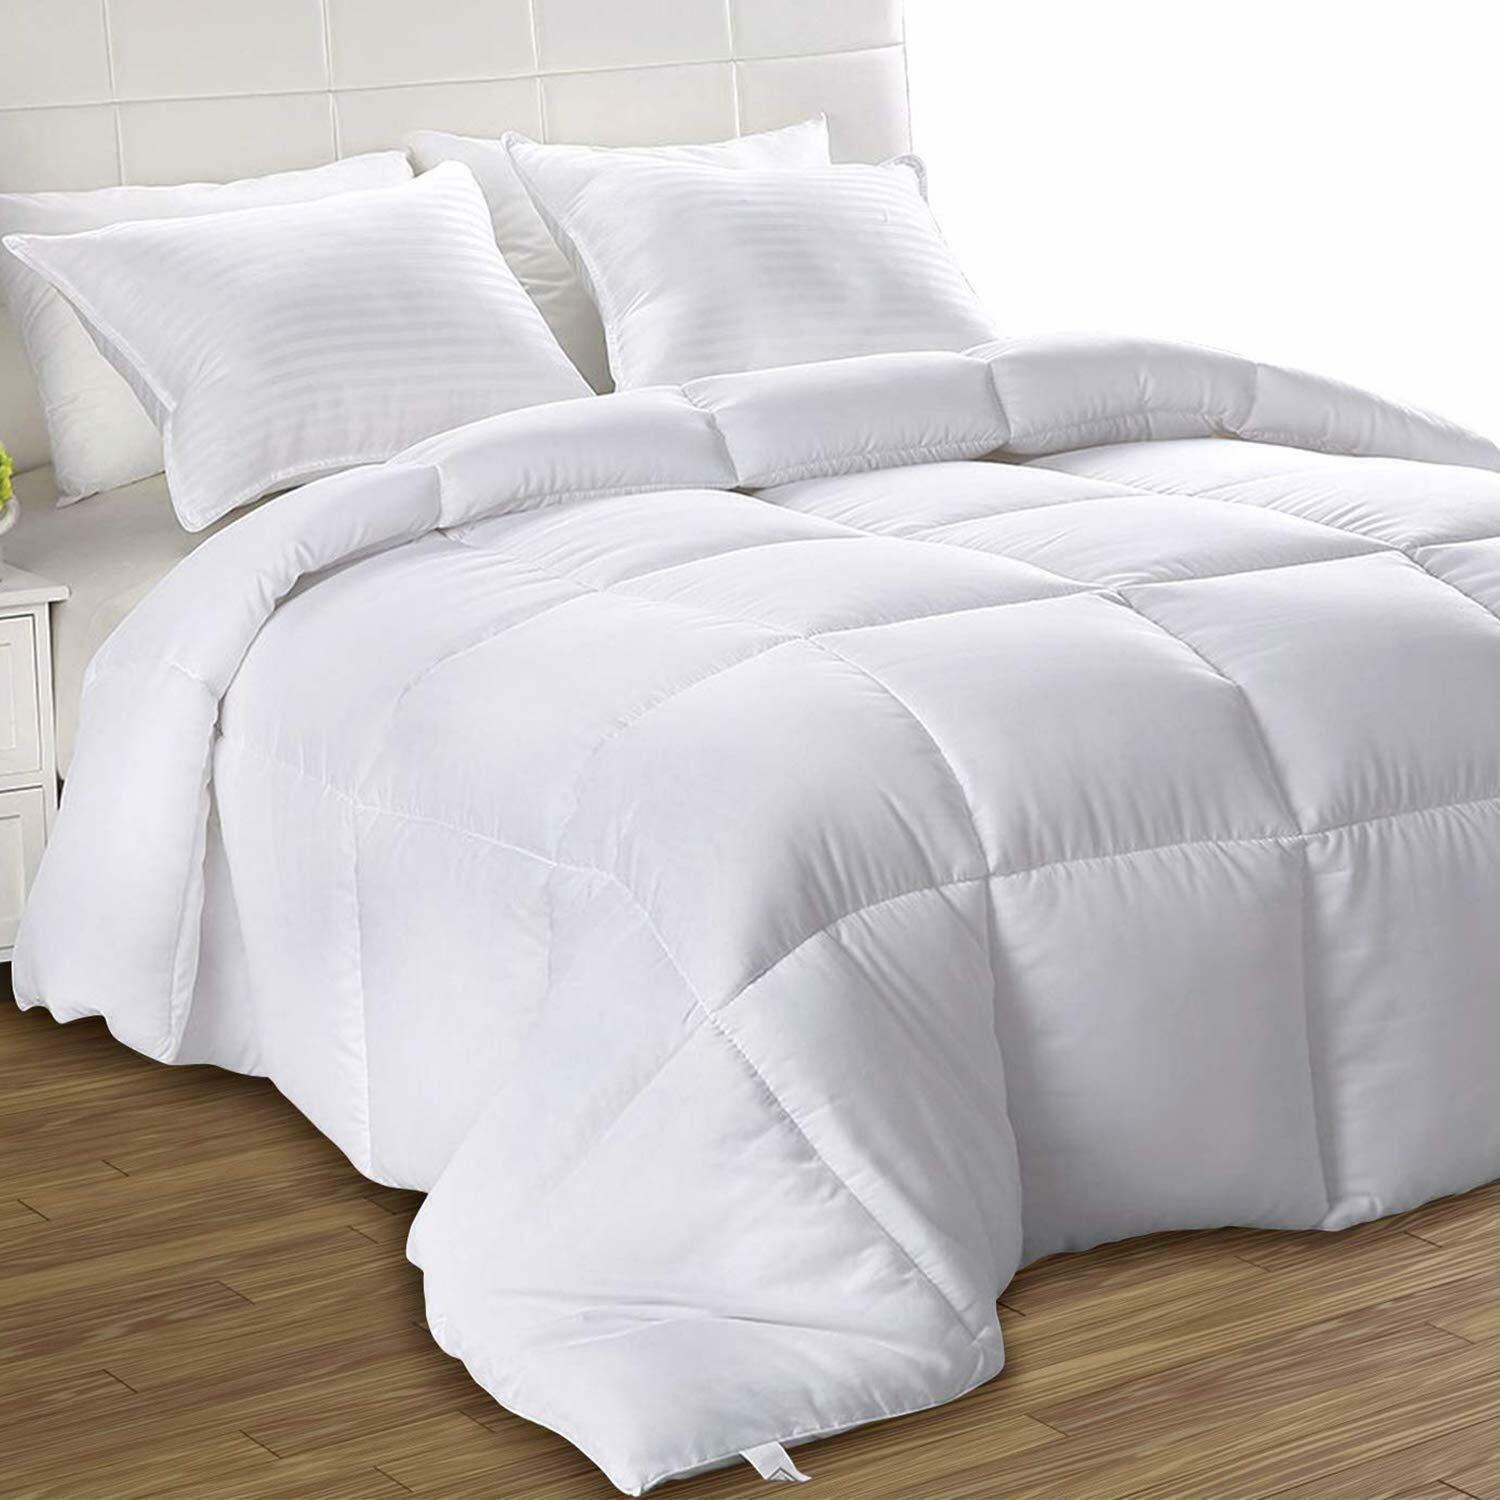 All Season Comforter Down Alternative White Duvet Stitched Utopia Bedding